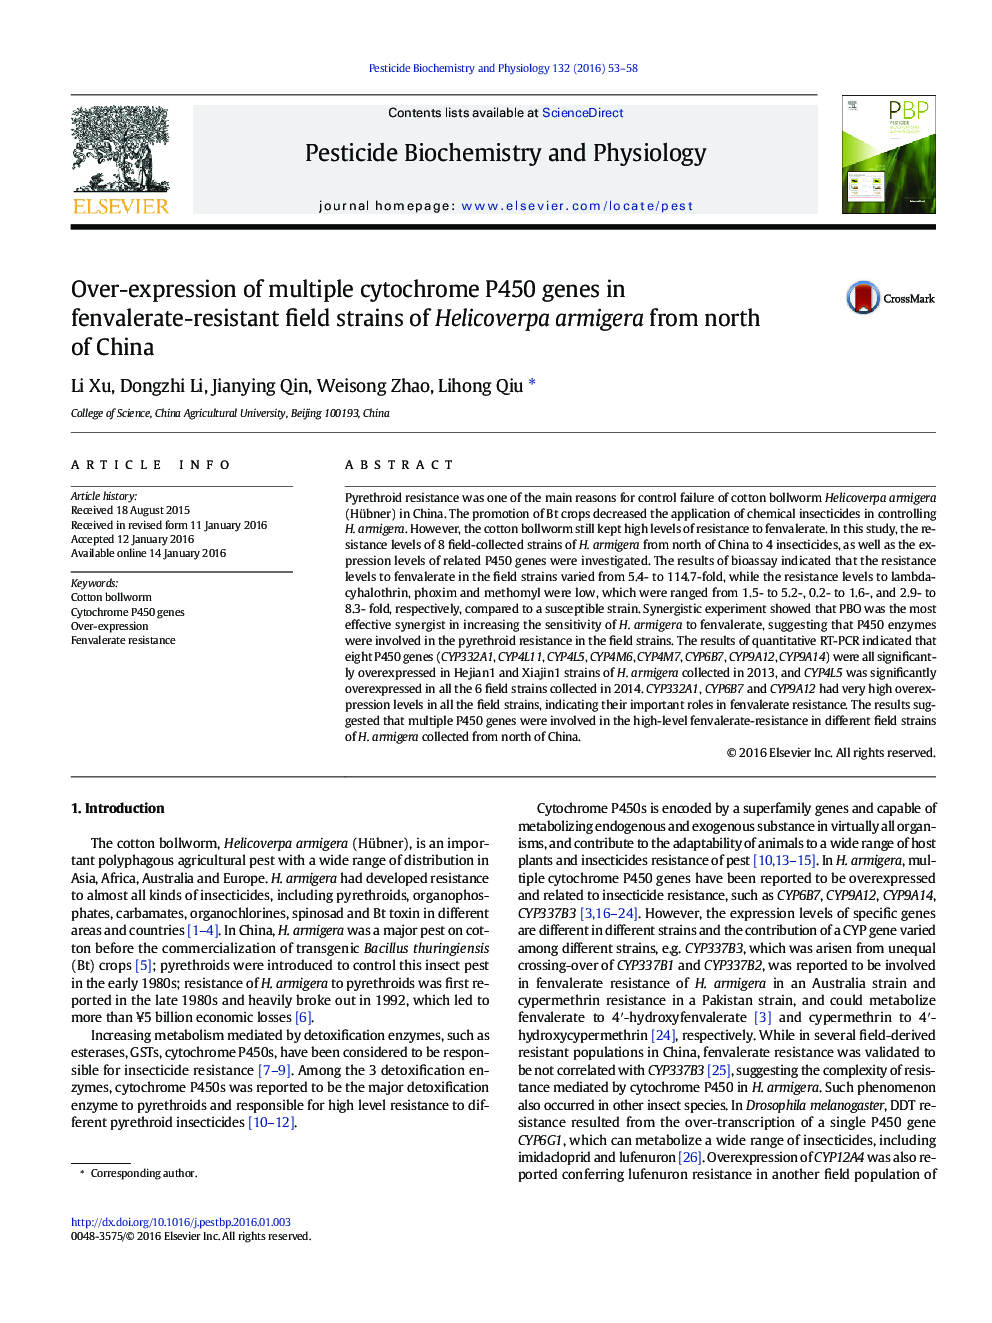 بیش بیان ژن سیتوکروم P450 متعدد در سویه های درست مقاوم در برابر fenvalerate از Helicoverpa armigera از شمال چین